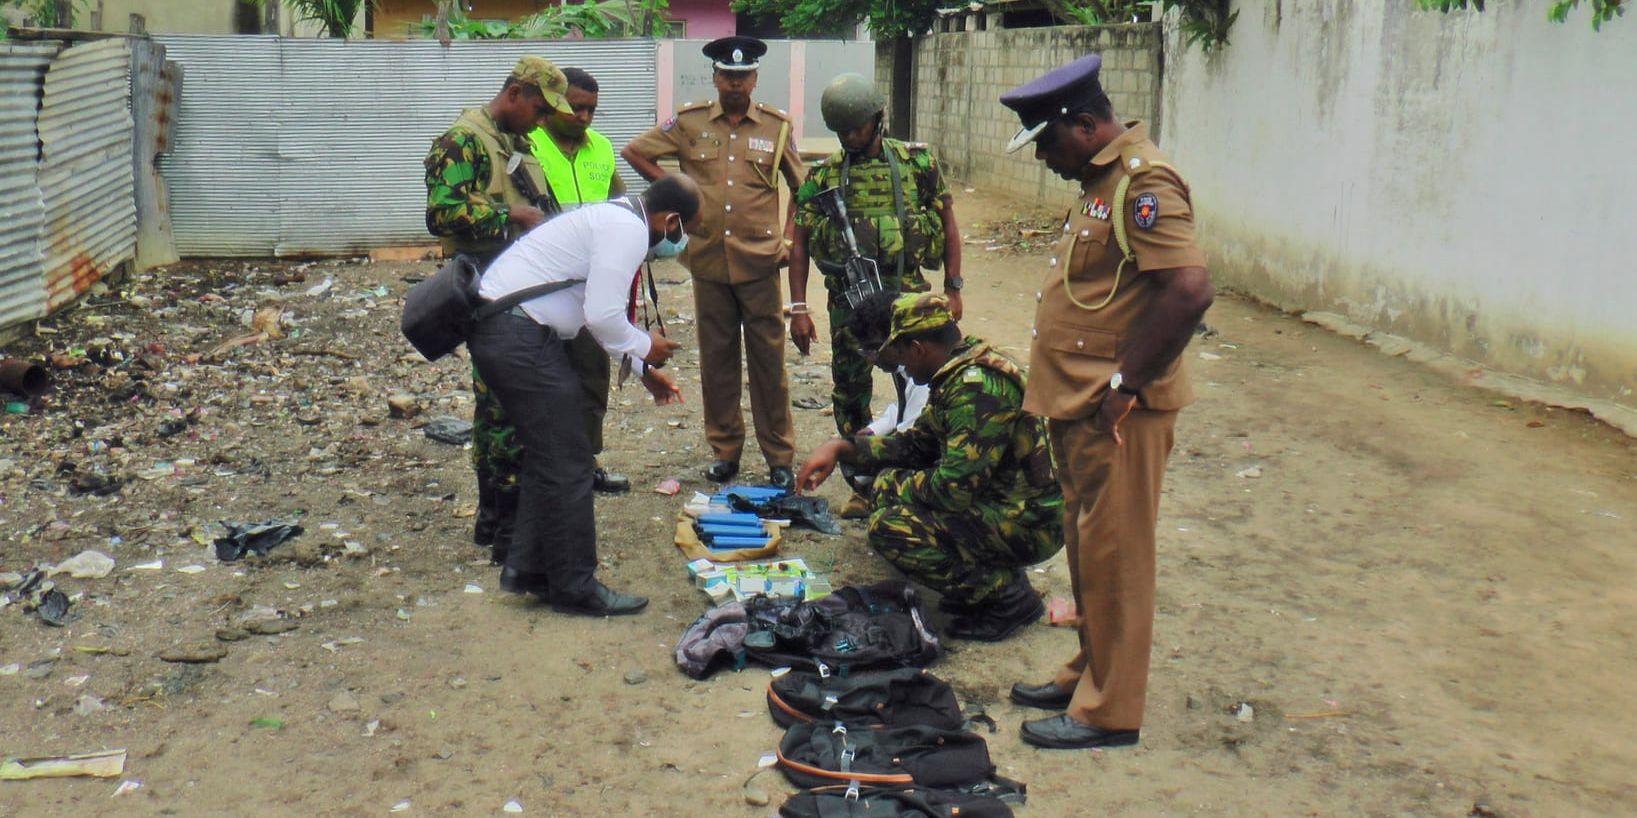 Lankesisk polis och militär visar upp beslagtagna föremål som hittats vid en räd i östra Sri Lanka och som troligen använts för att tillverka bomber. Arkivbild.